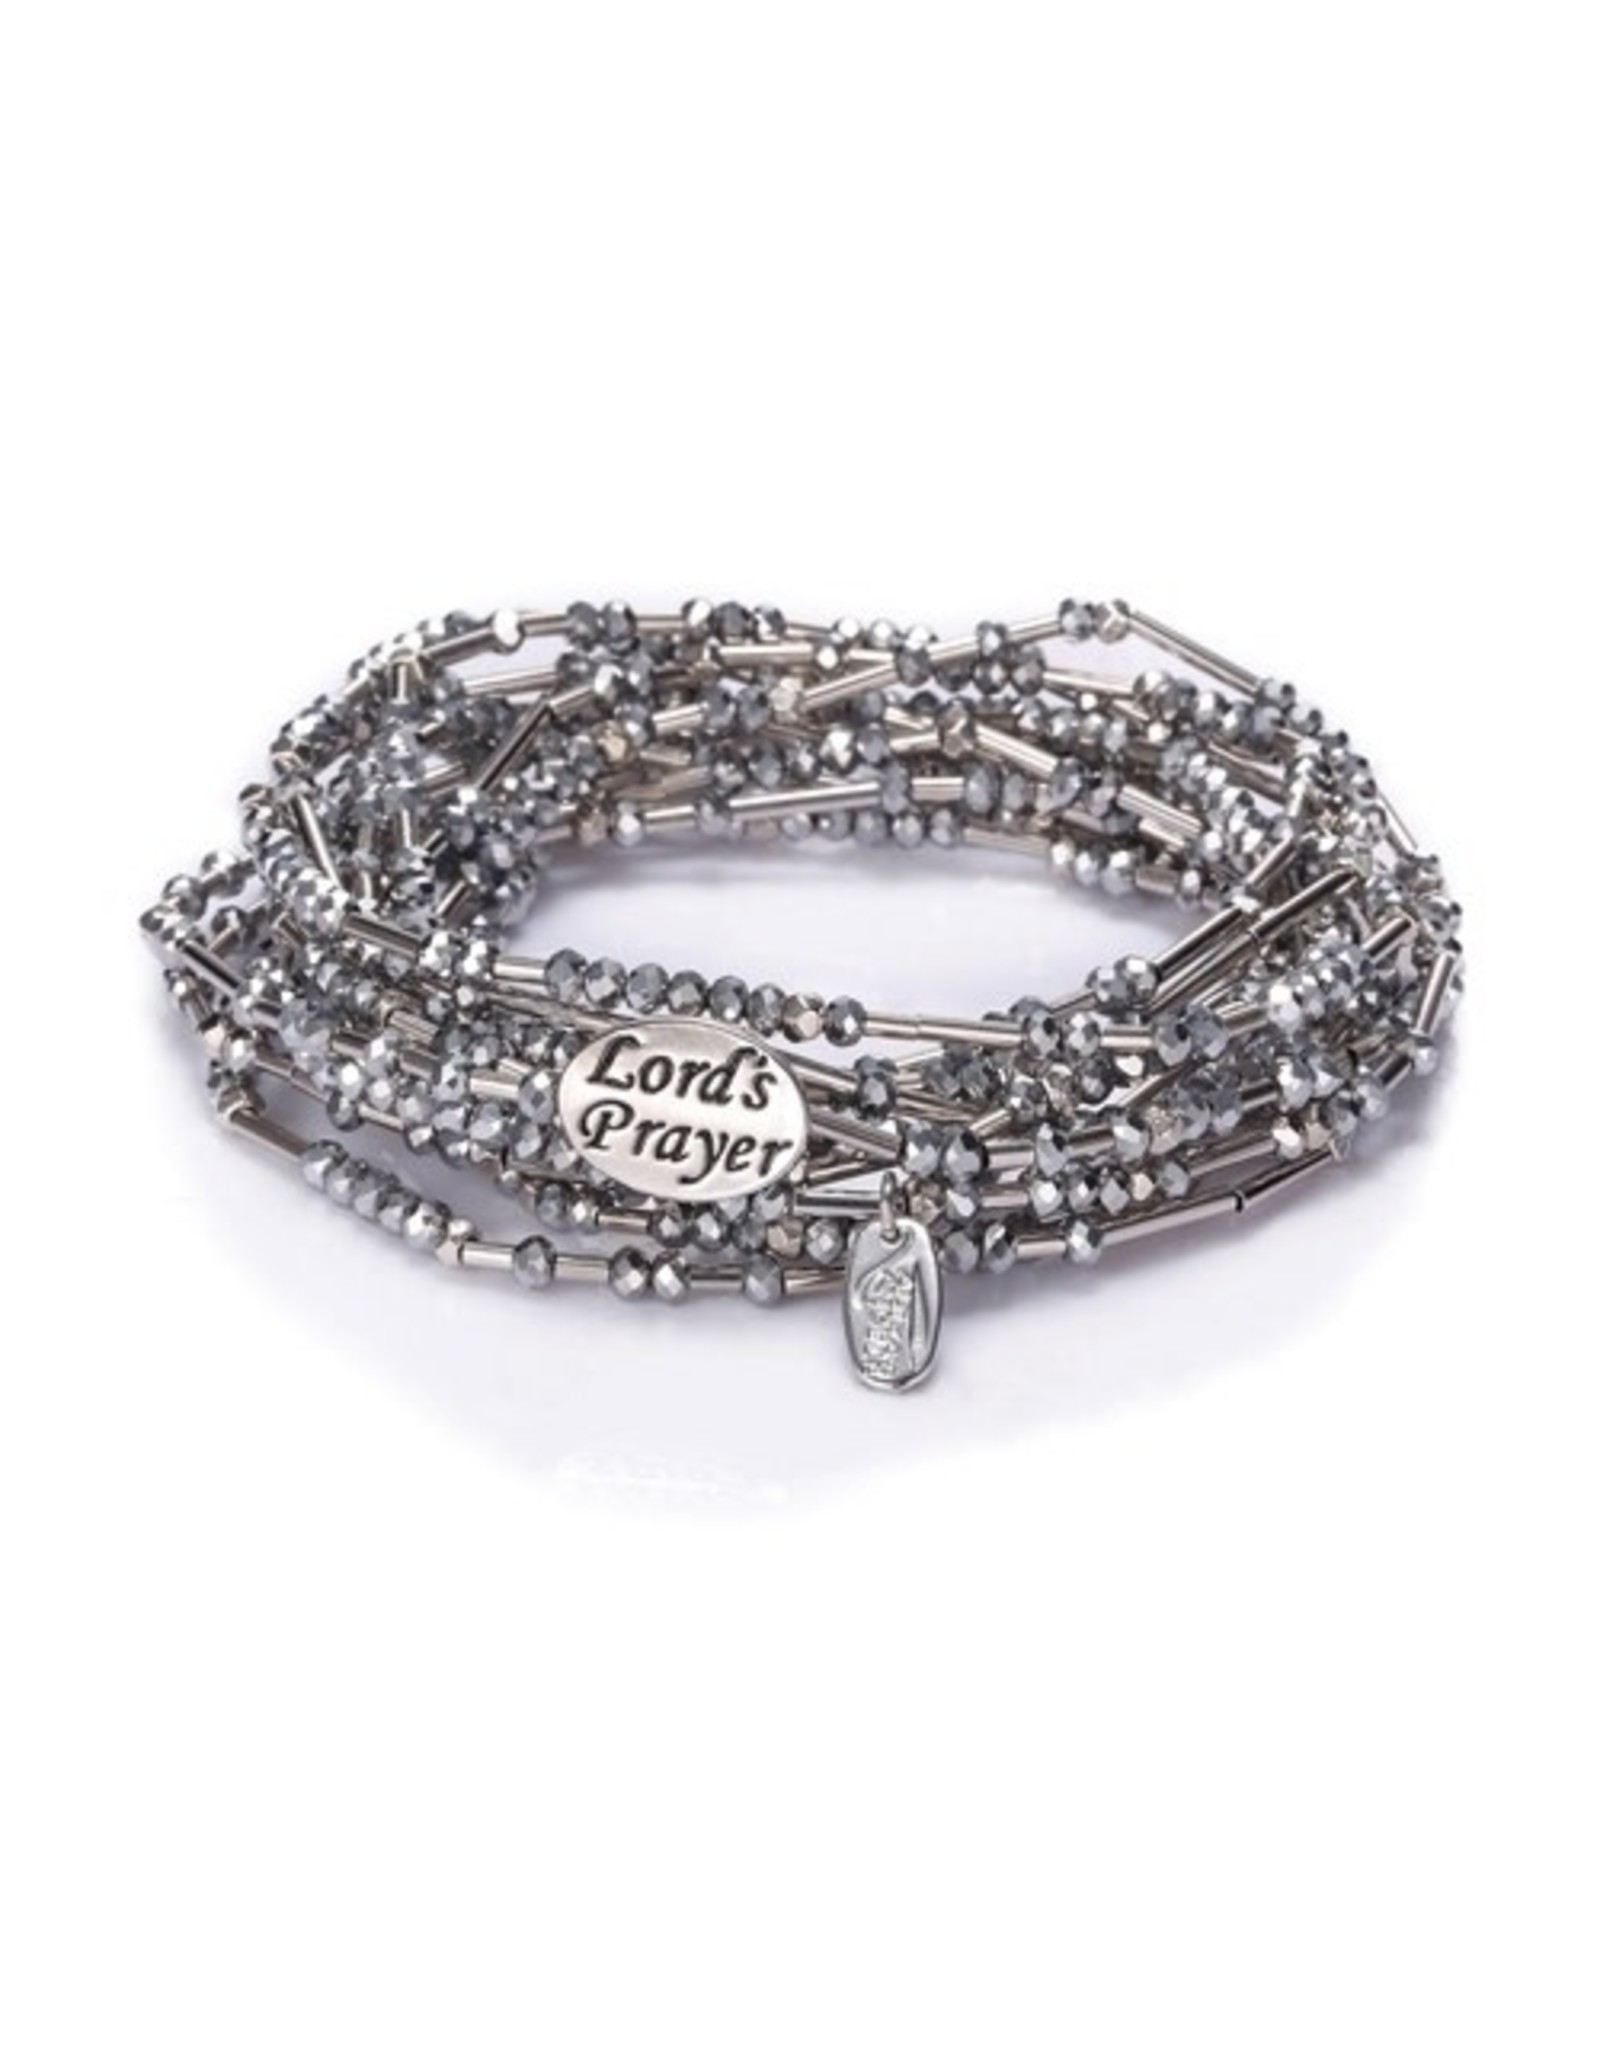 Lord's Prayer Morse Code Necklace/Wrap Bracelet